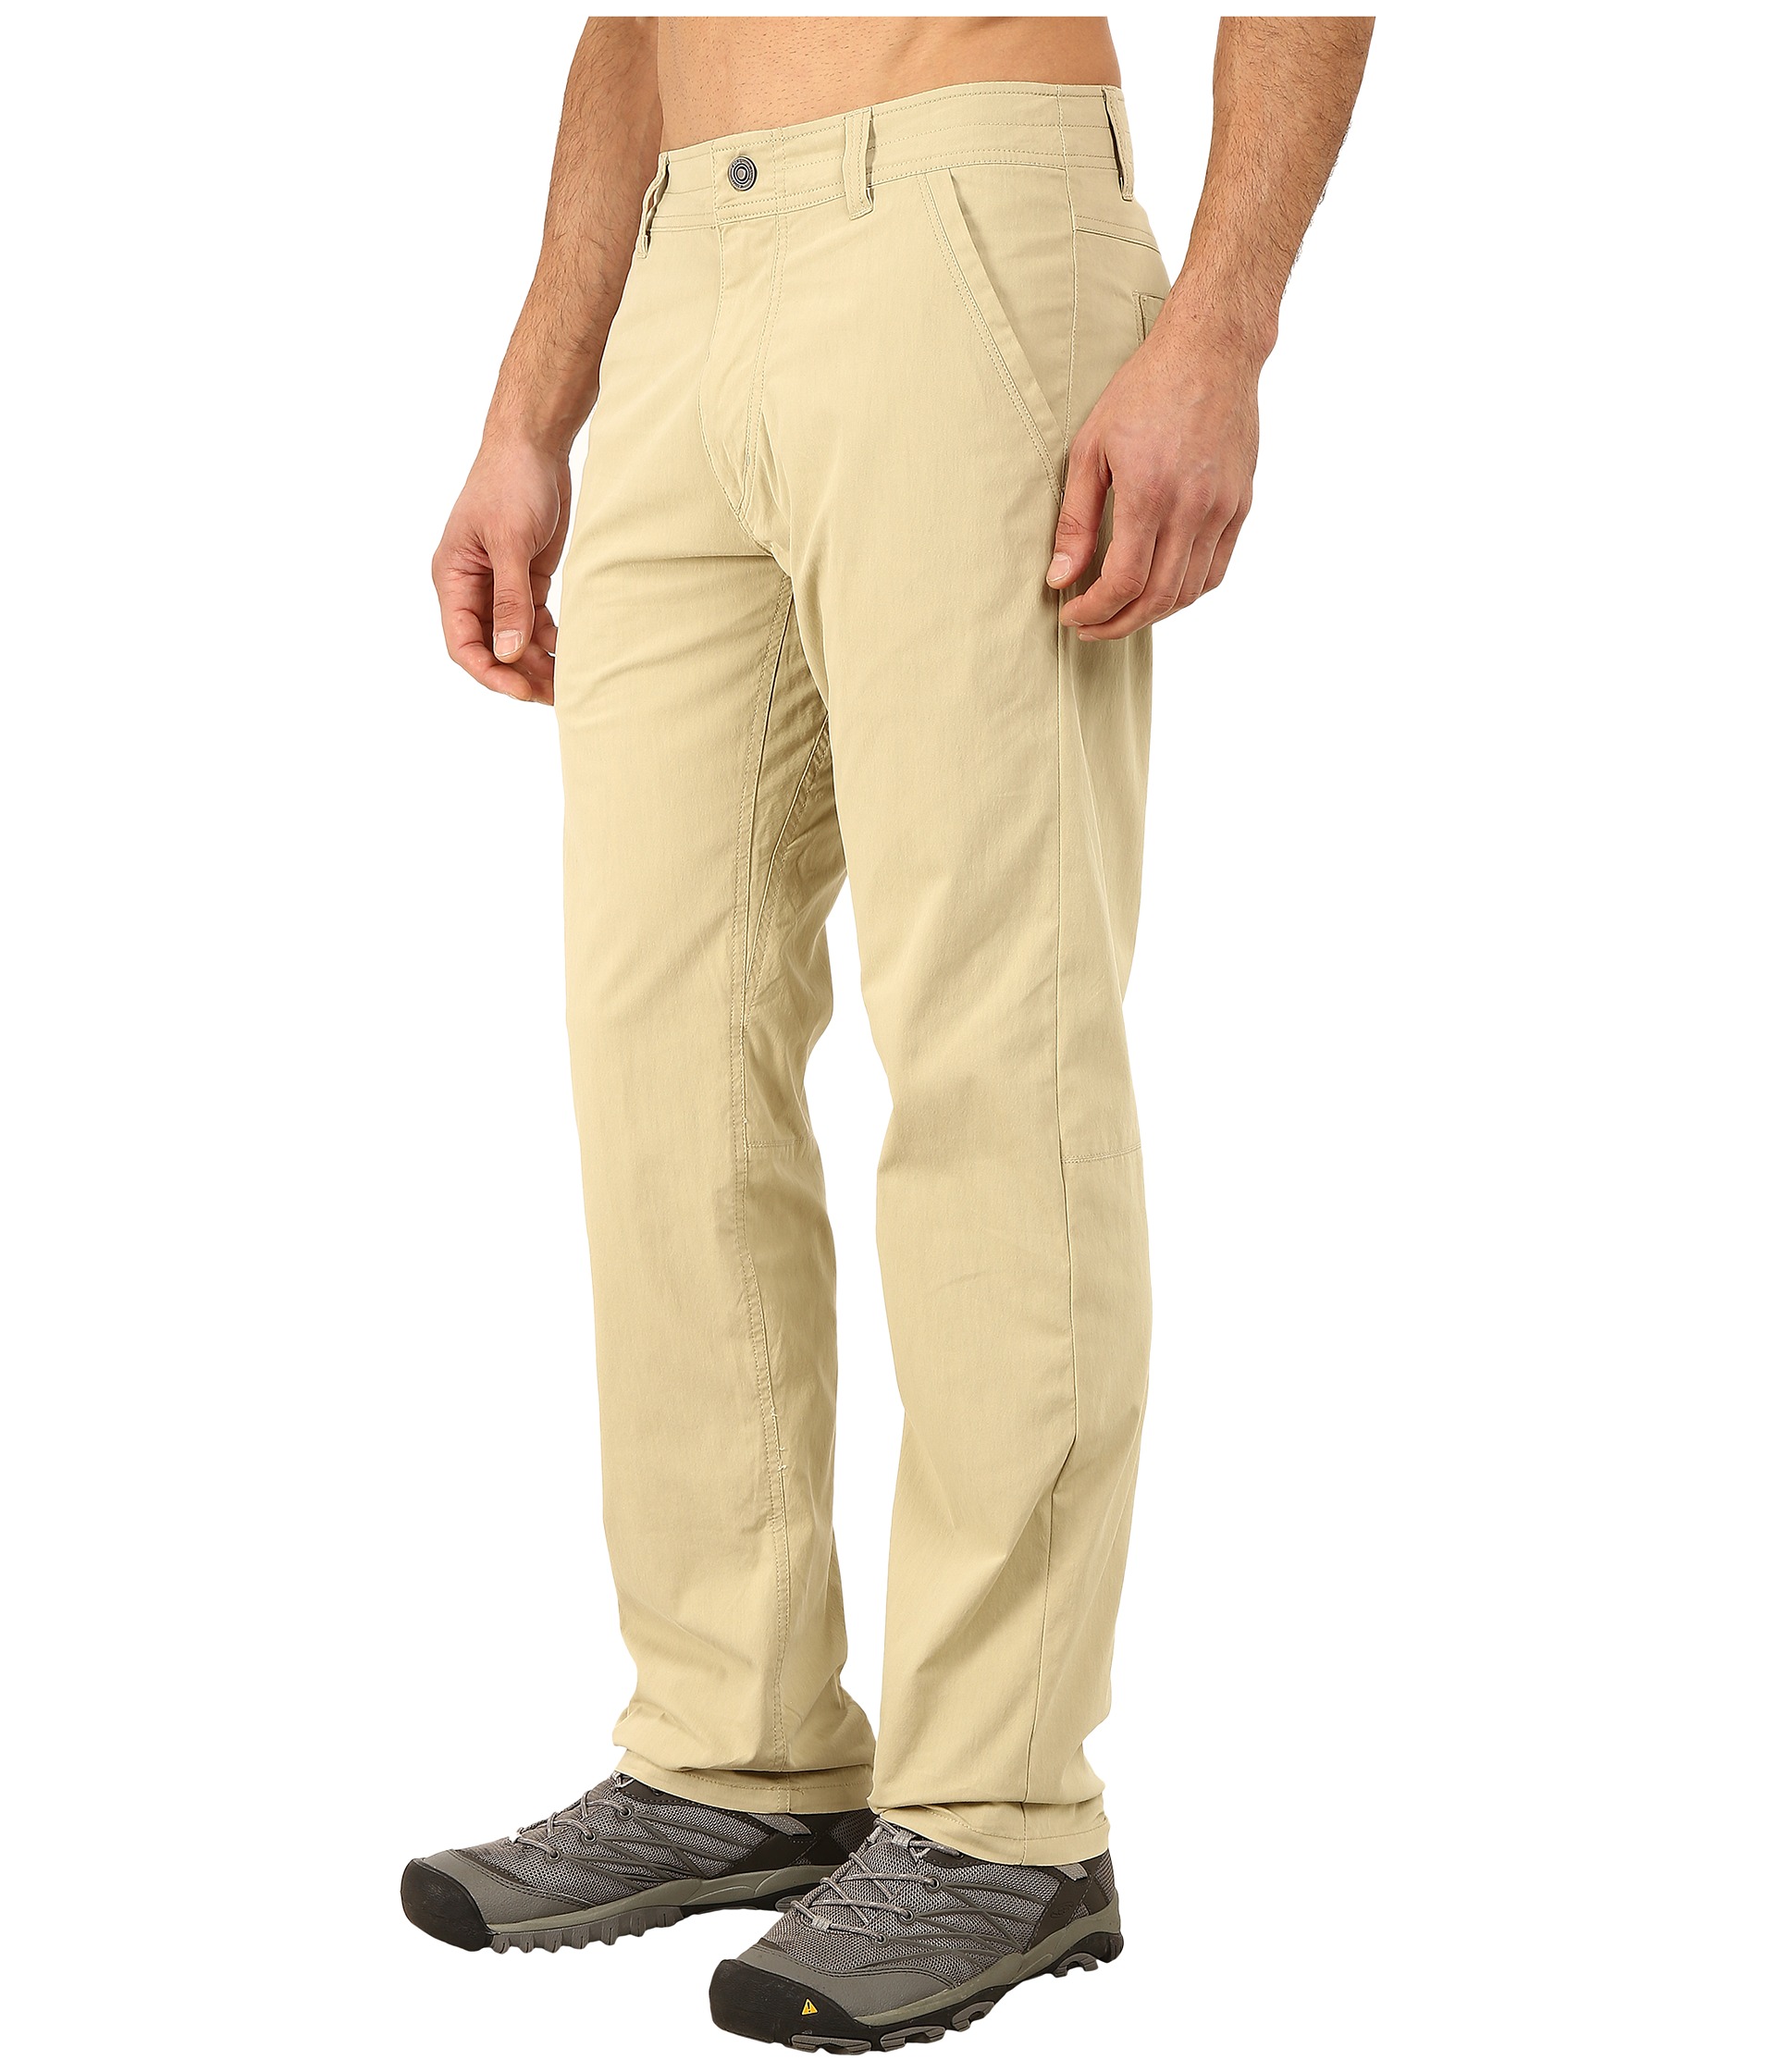 KUHL Slax™ Pants at Zappos.com